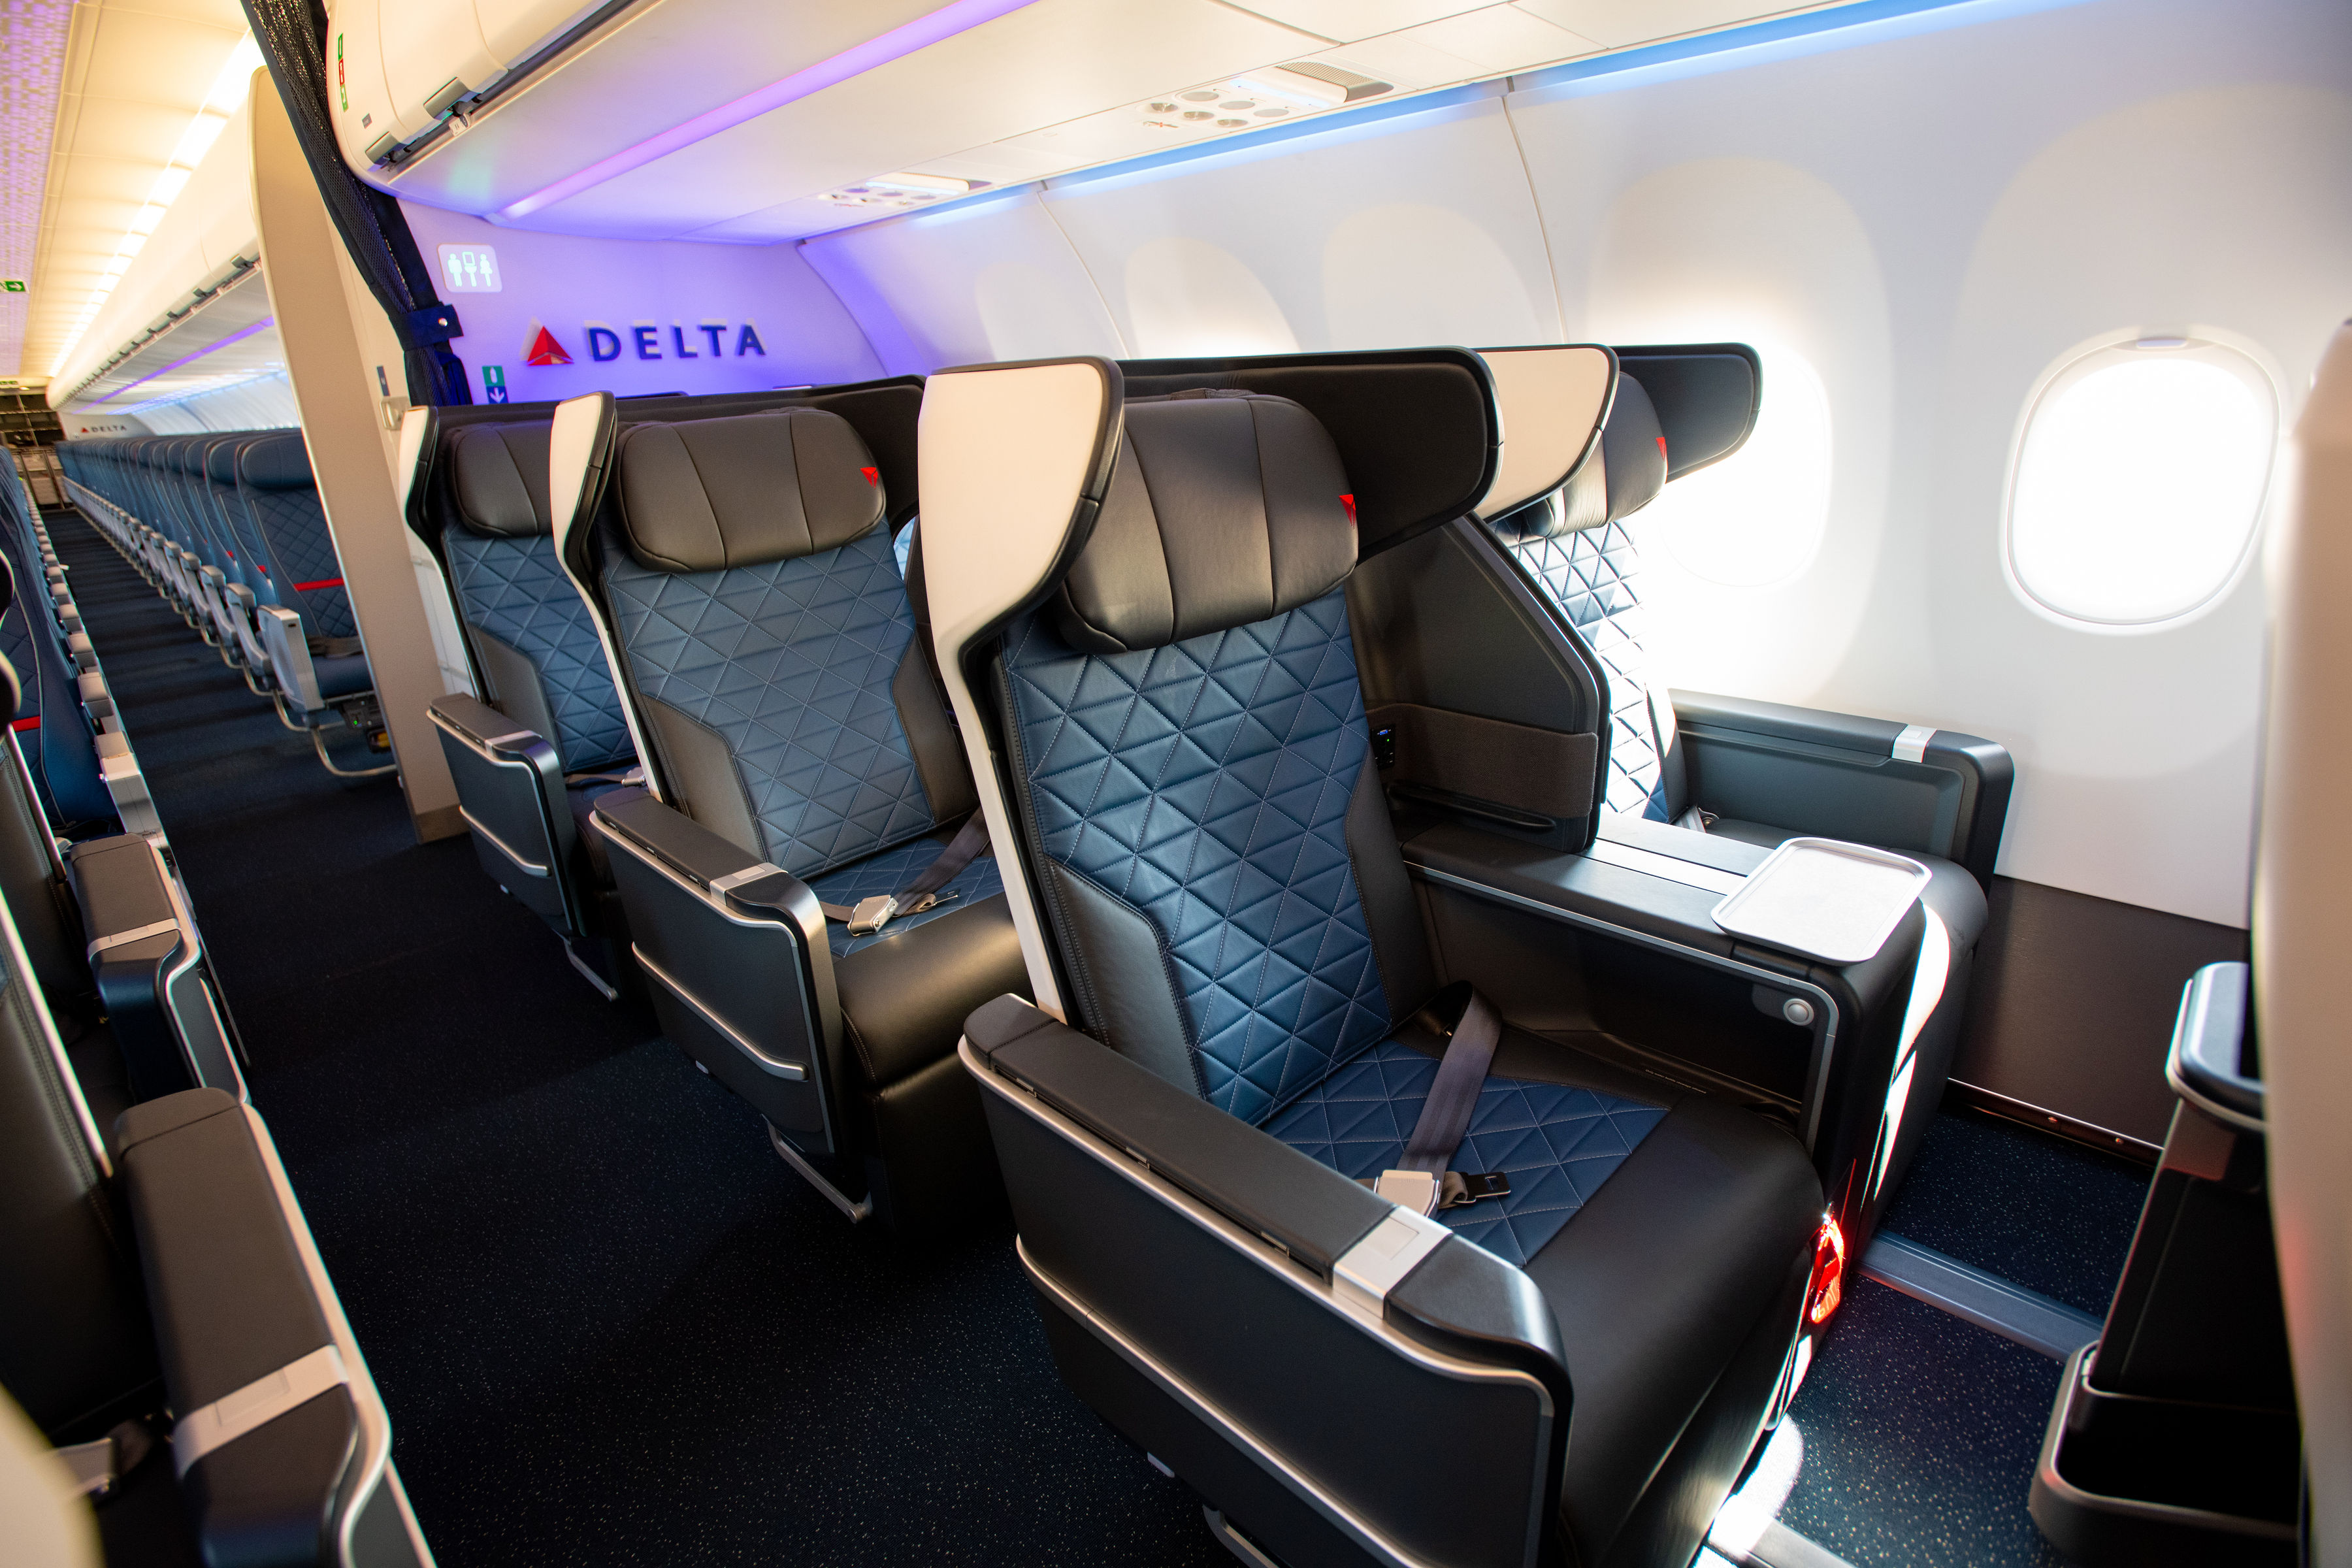 delta-a321neo-domestic-first-class-cabin-delta-news-hub